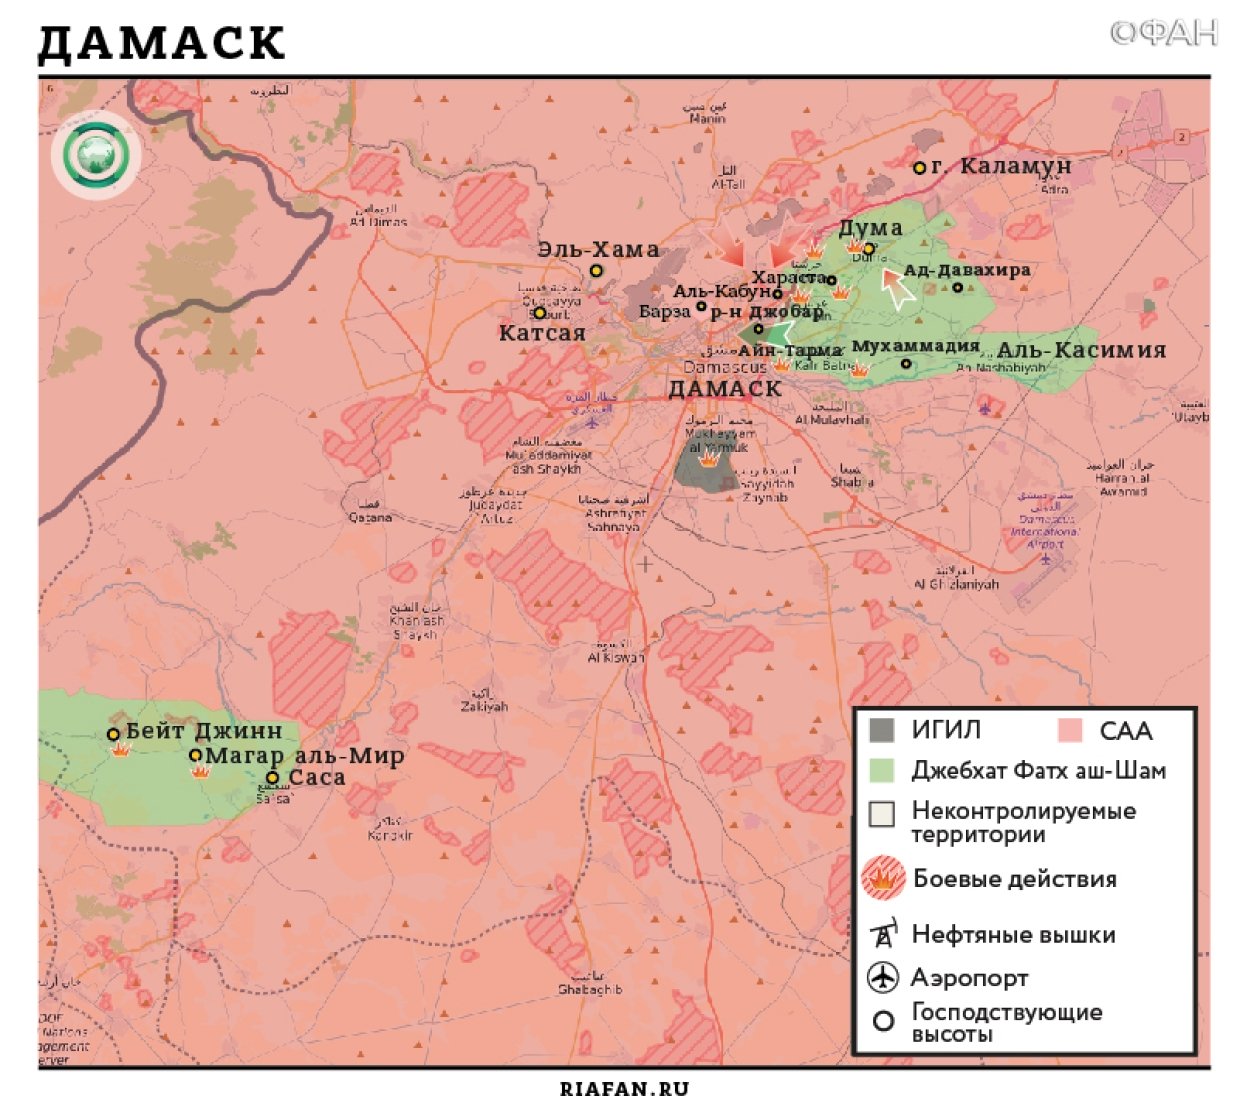 Сирия новости 10 сентября 19.30: 17 мирных жителей погибло под ударами коалиции в Абу Кемале, SDF ведут бои с ИГ на северных окраинах Дейр эз-Зора 